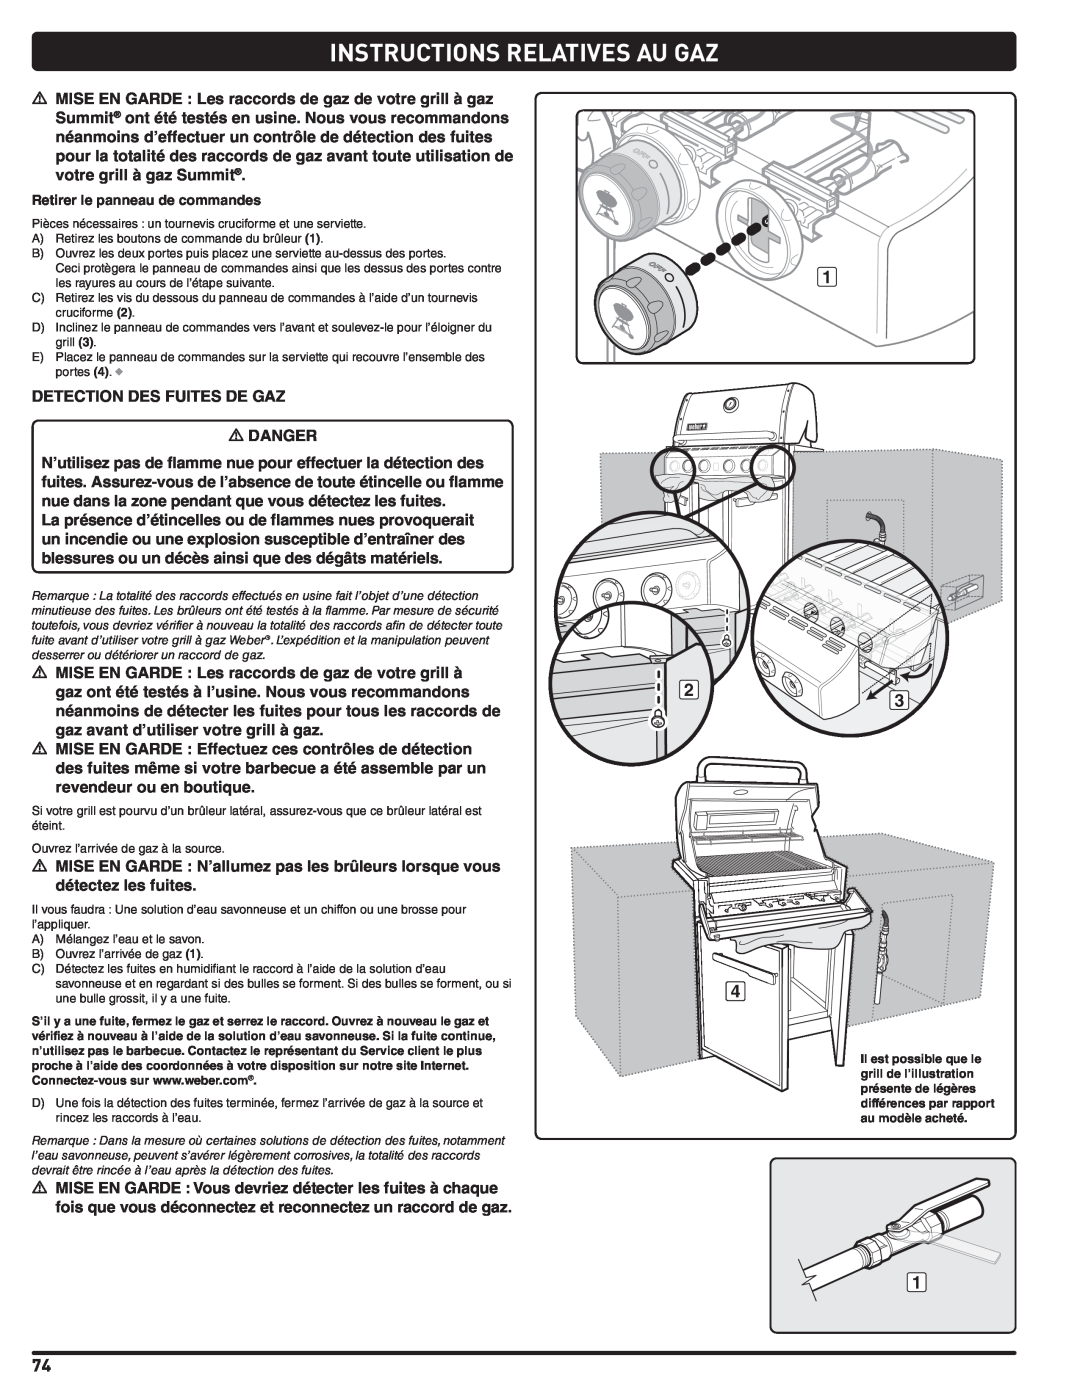 Weber 56576 manual Instructions Relatives Au Gaz, DETECTION DES FUITES DE GAZ m DANGER 